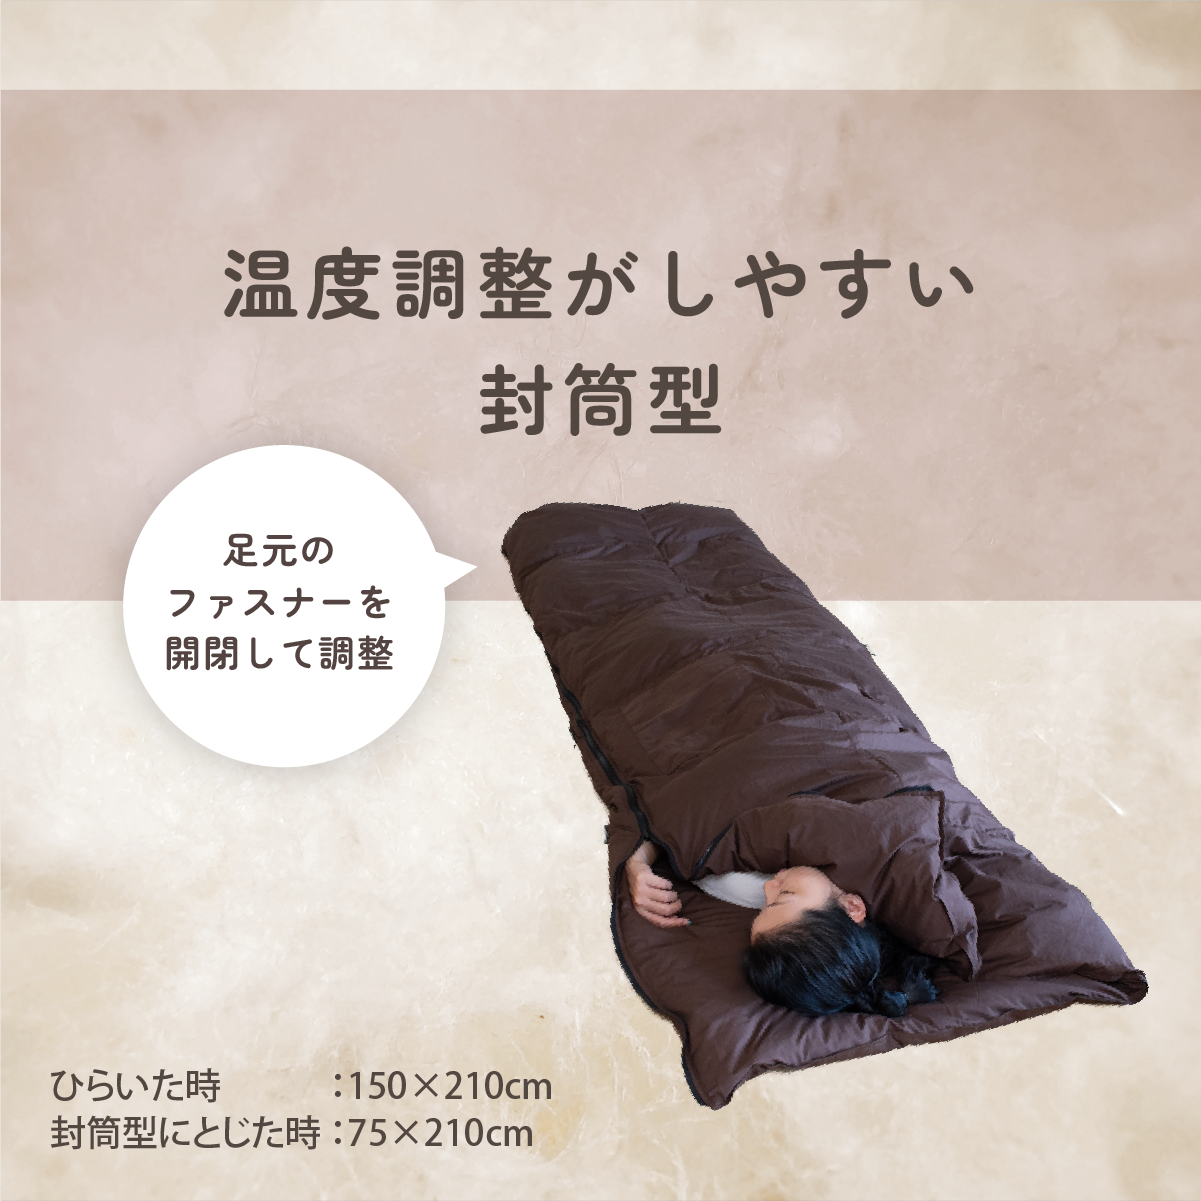  одиночный - конверт type спальный мешок 2 листов объединенный модель пуховый футон размер модификация поли хлопок ткань lW мойка переделка преобразование li размер сделано в Японии 